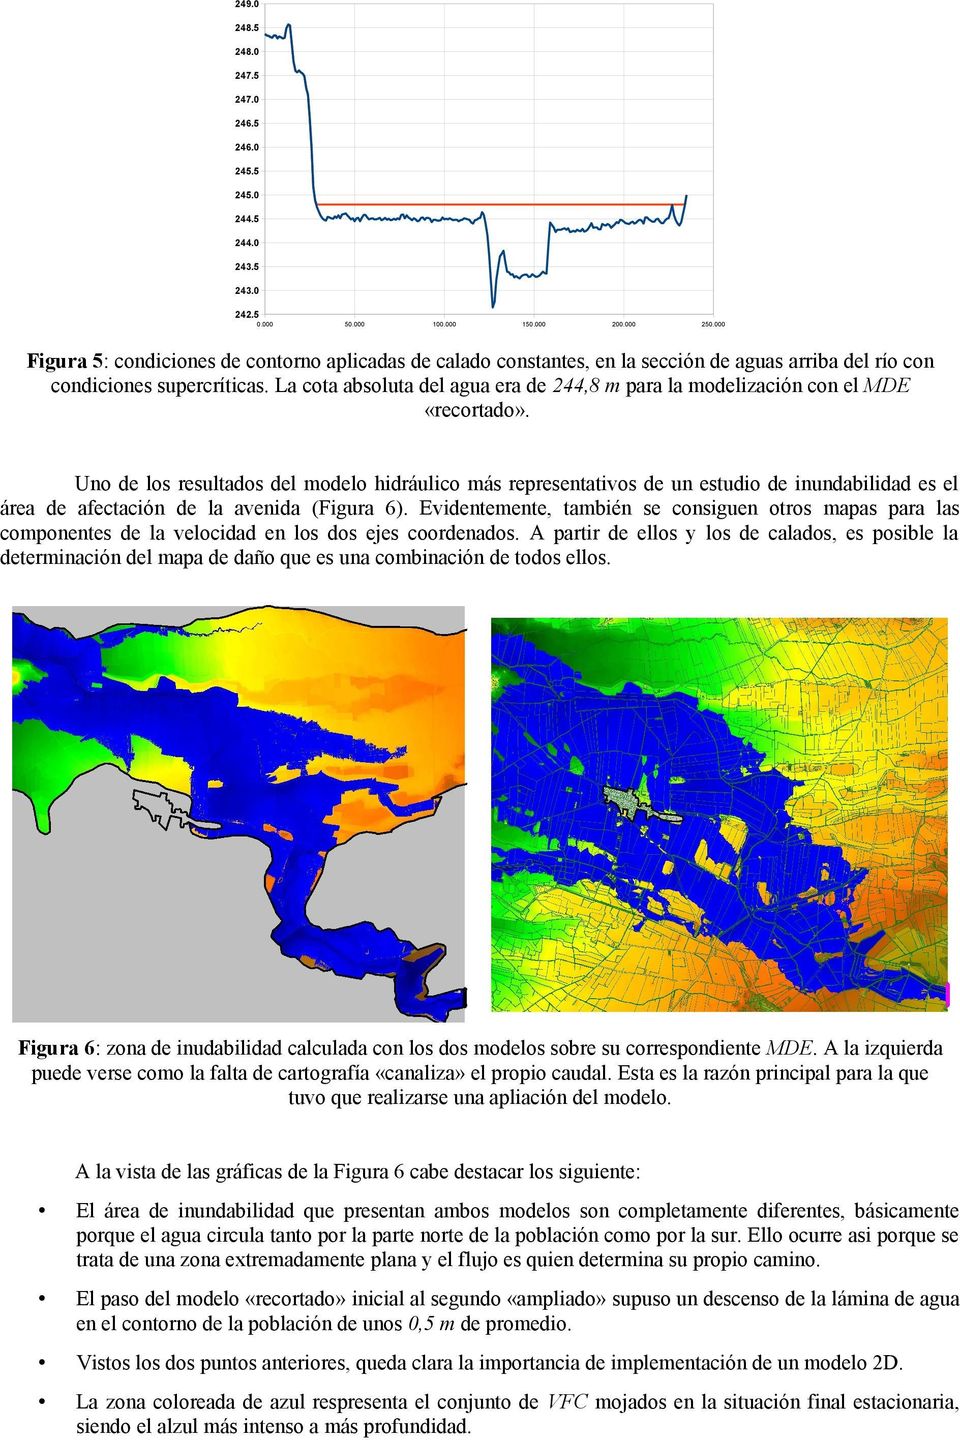 Uo de los resultados del modelo hdráulco más represetatvos de u estudo de udabldad es el área de afectacó de la aveda (Fgura 6).